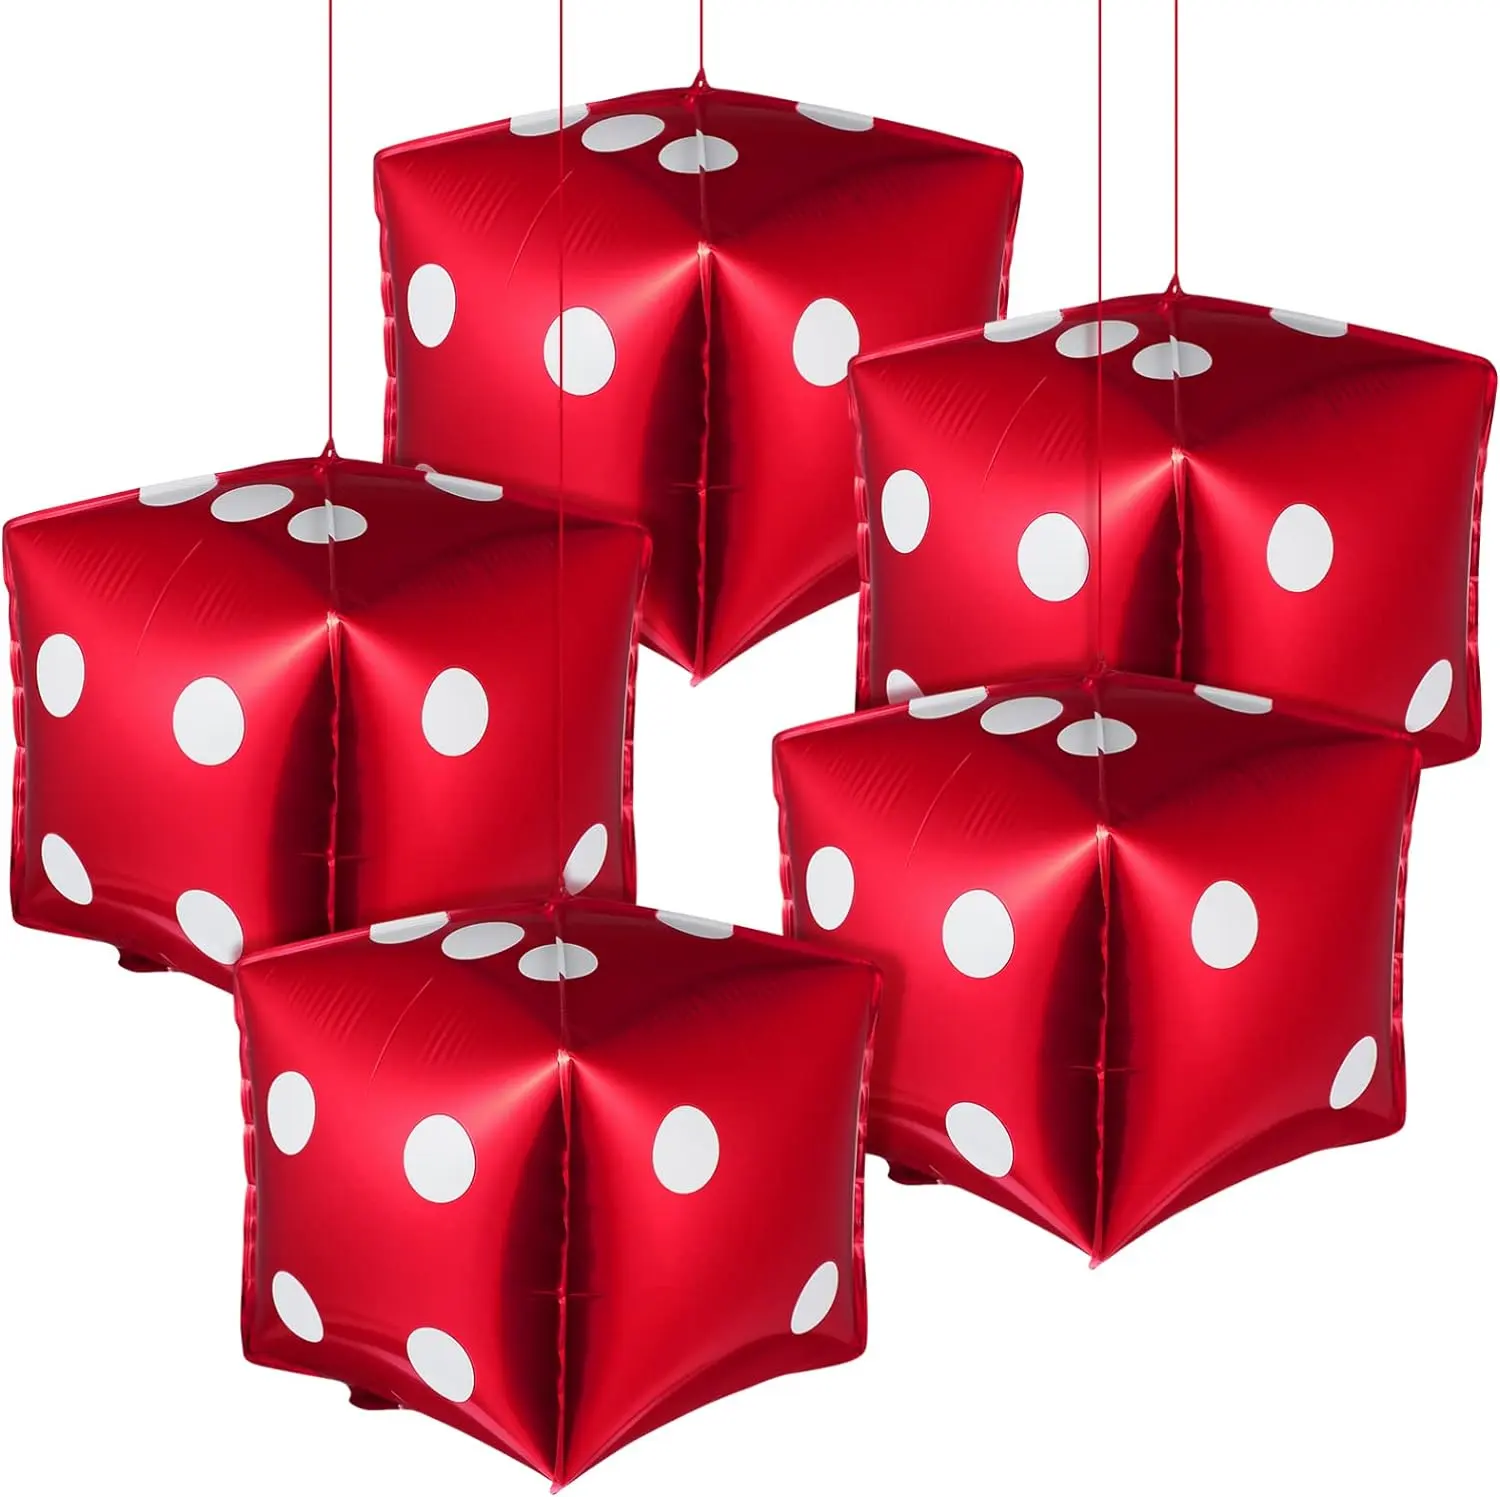 4d بالونات نرد لعبة البوكر البالونات في الكازينو ديكور حفلات القمار